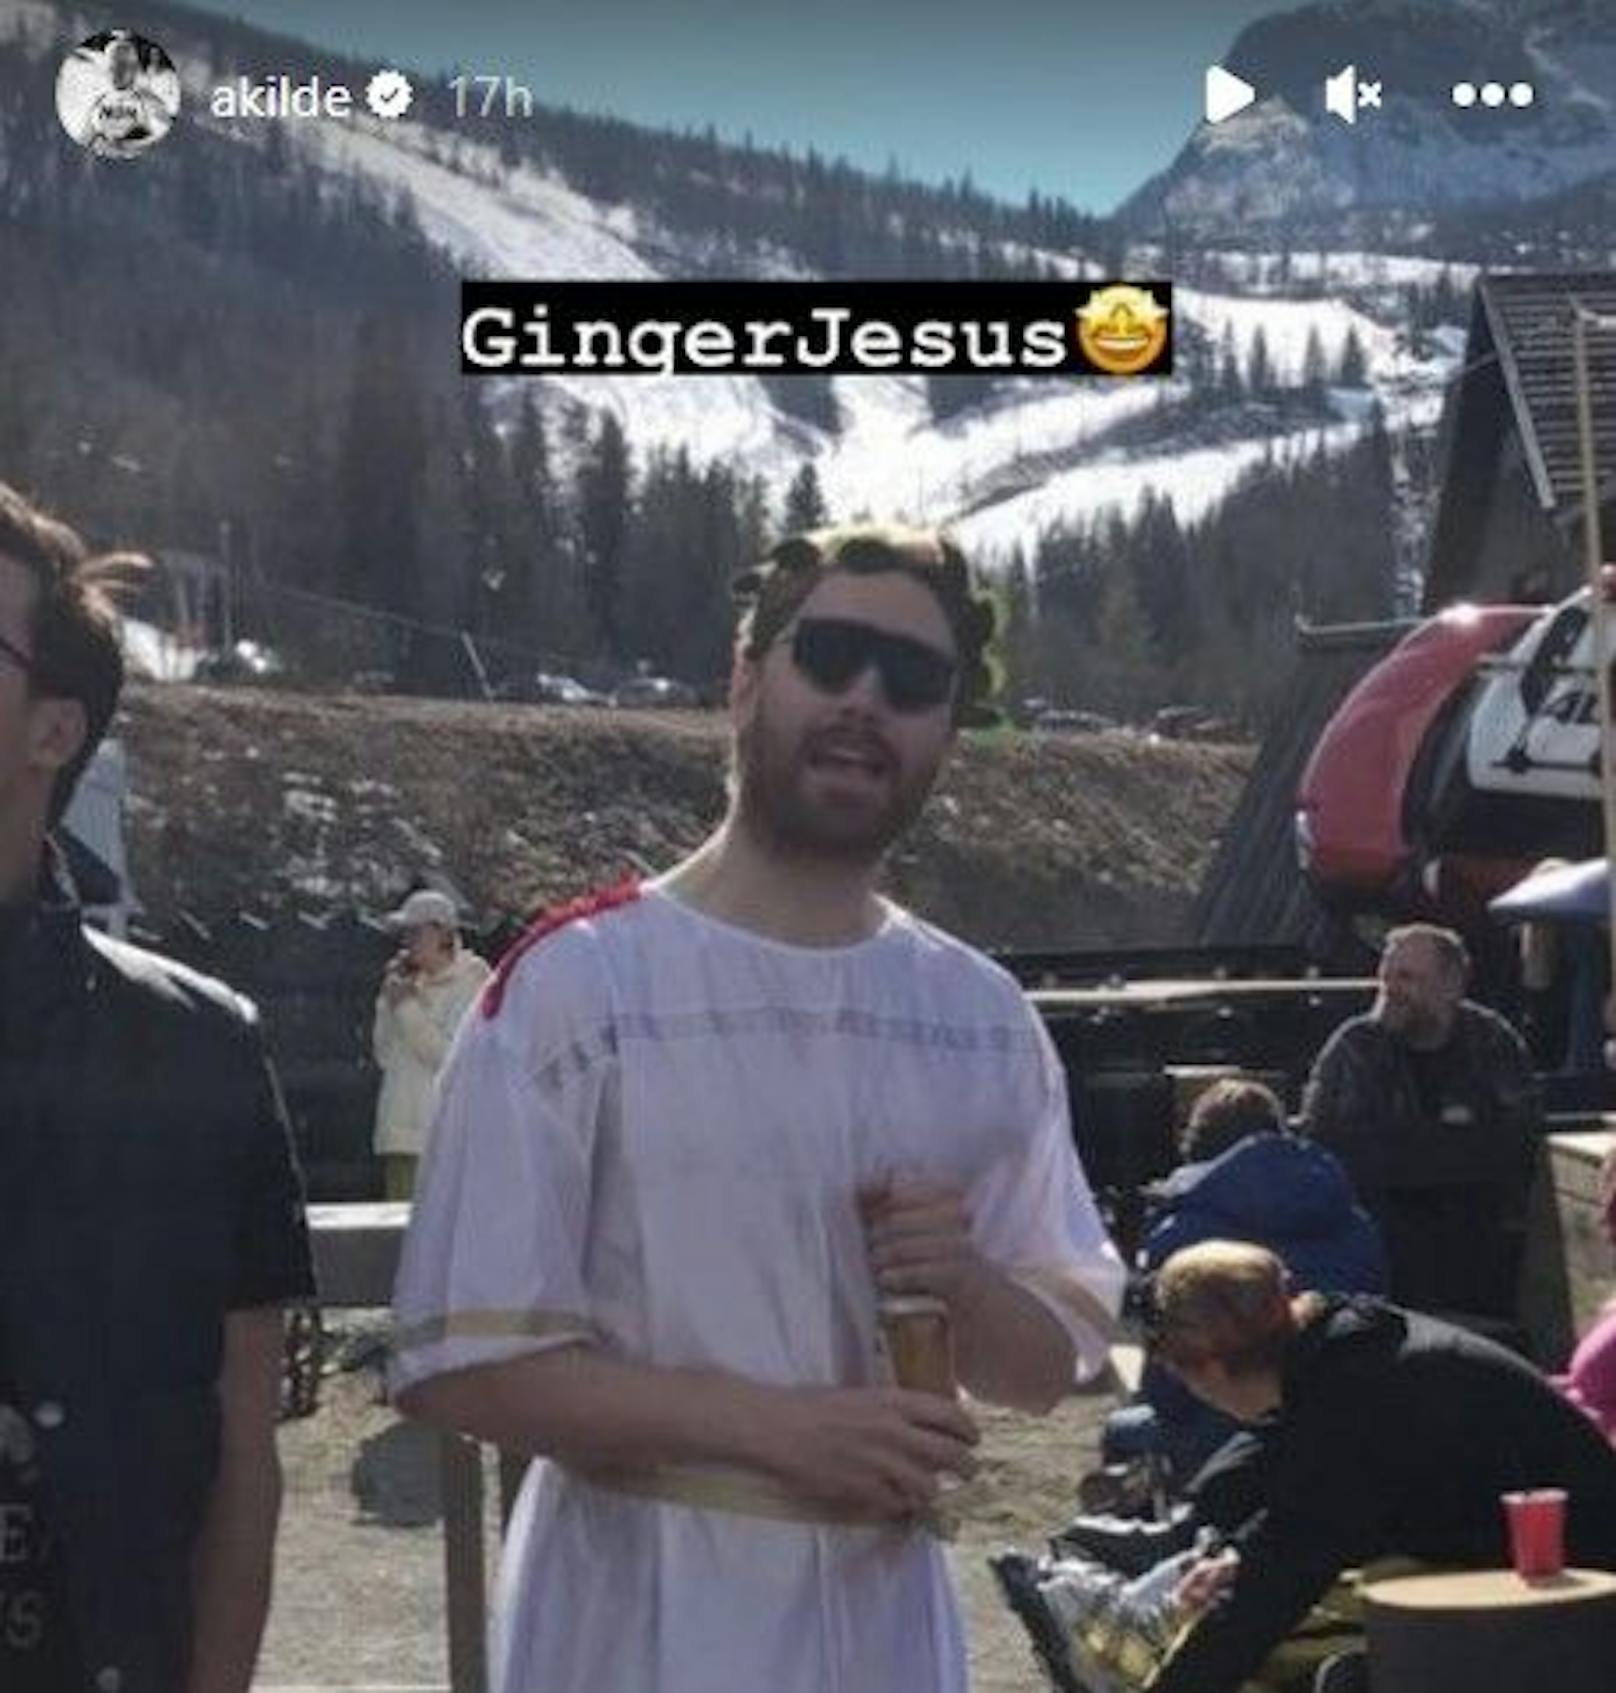 Kilde feiert den "Ginger Jesus" Haugan in seiner Instagram-Story.